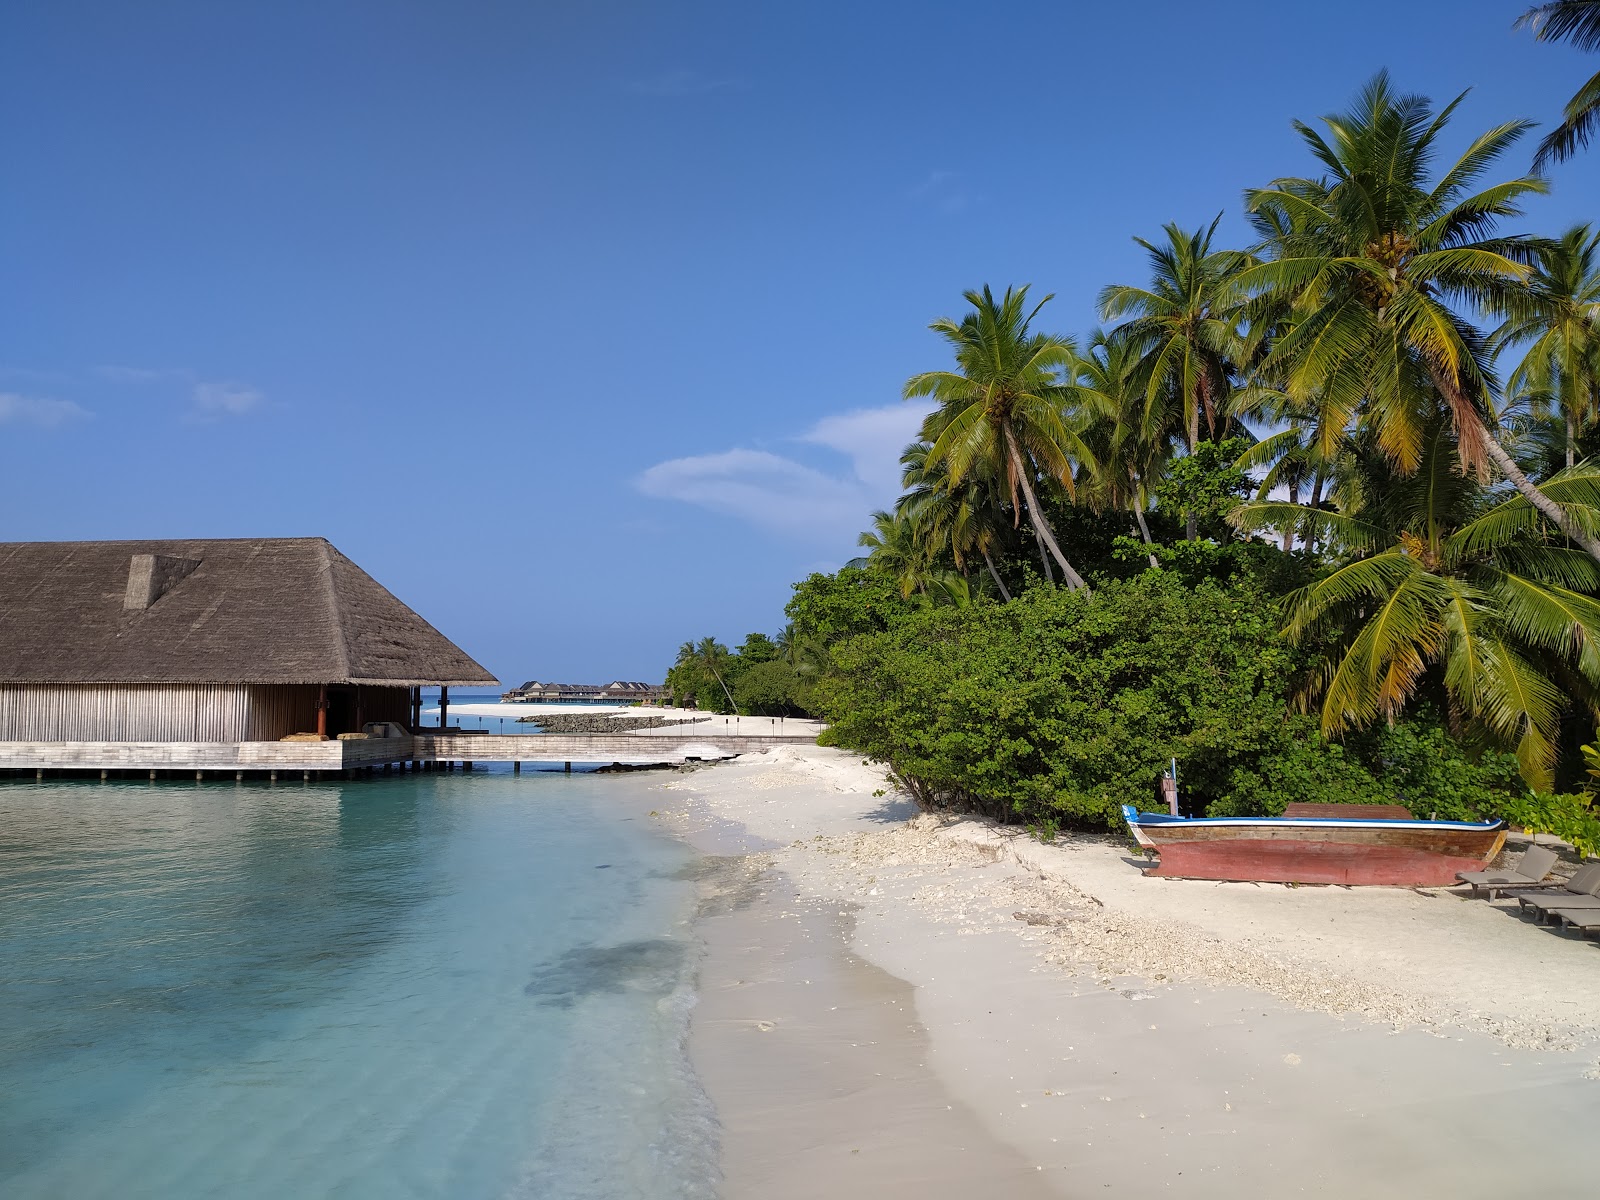 Foto af Joali Maldives med rummelig kyst